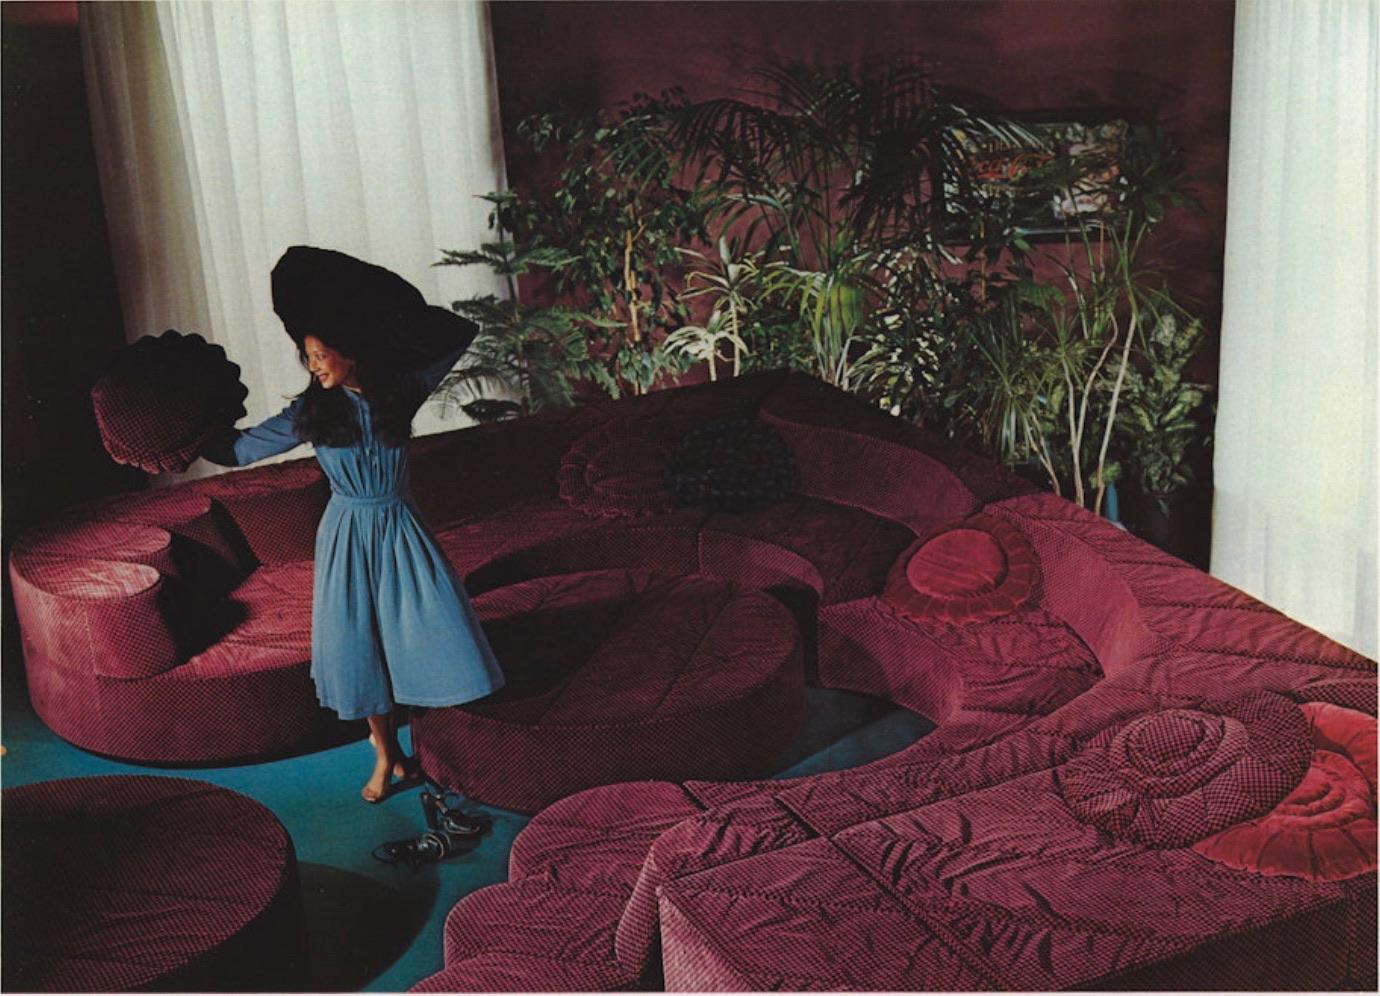 Roche Bobois “Paysage” Sofa In Coral Velvet By Hans Hopfer For Roche Bobois 1974 11